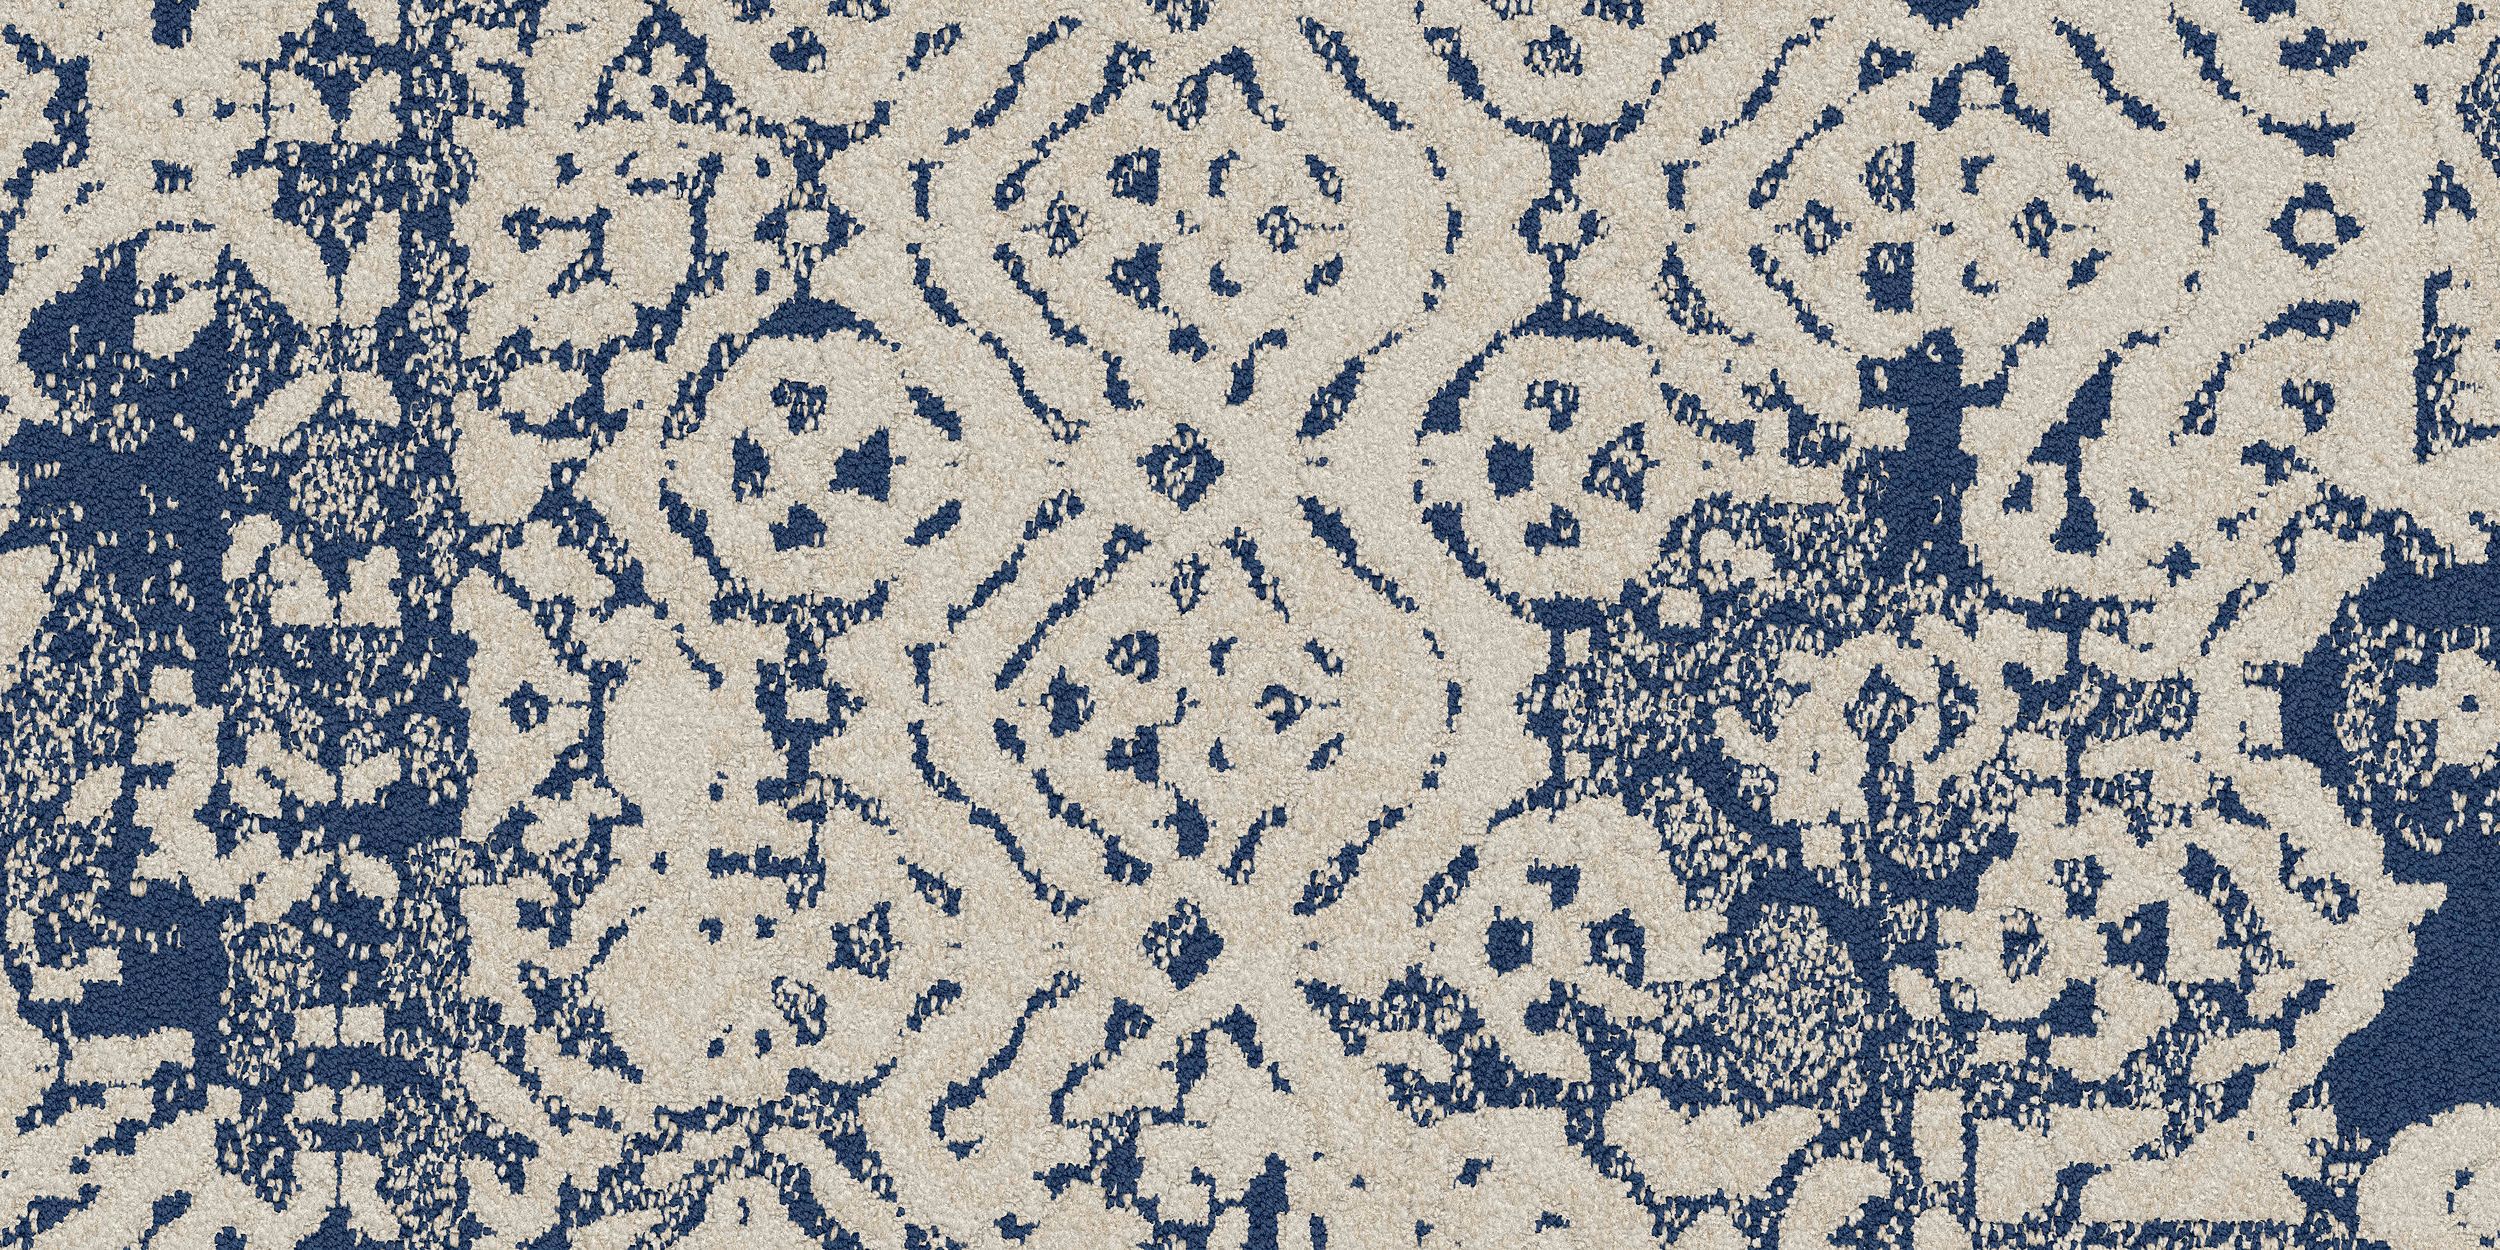 PM39 Carpet Tile in Denim número de imagen 3